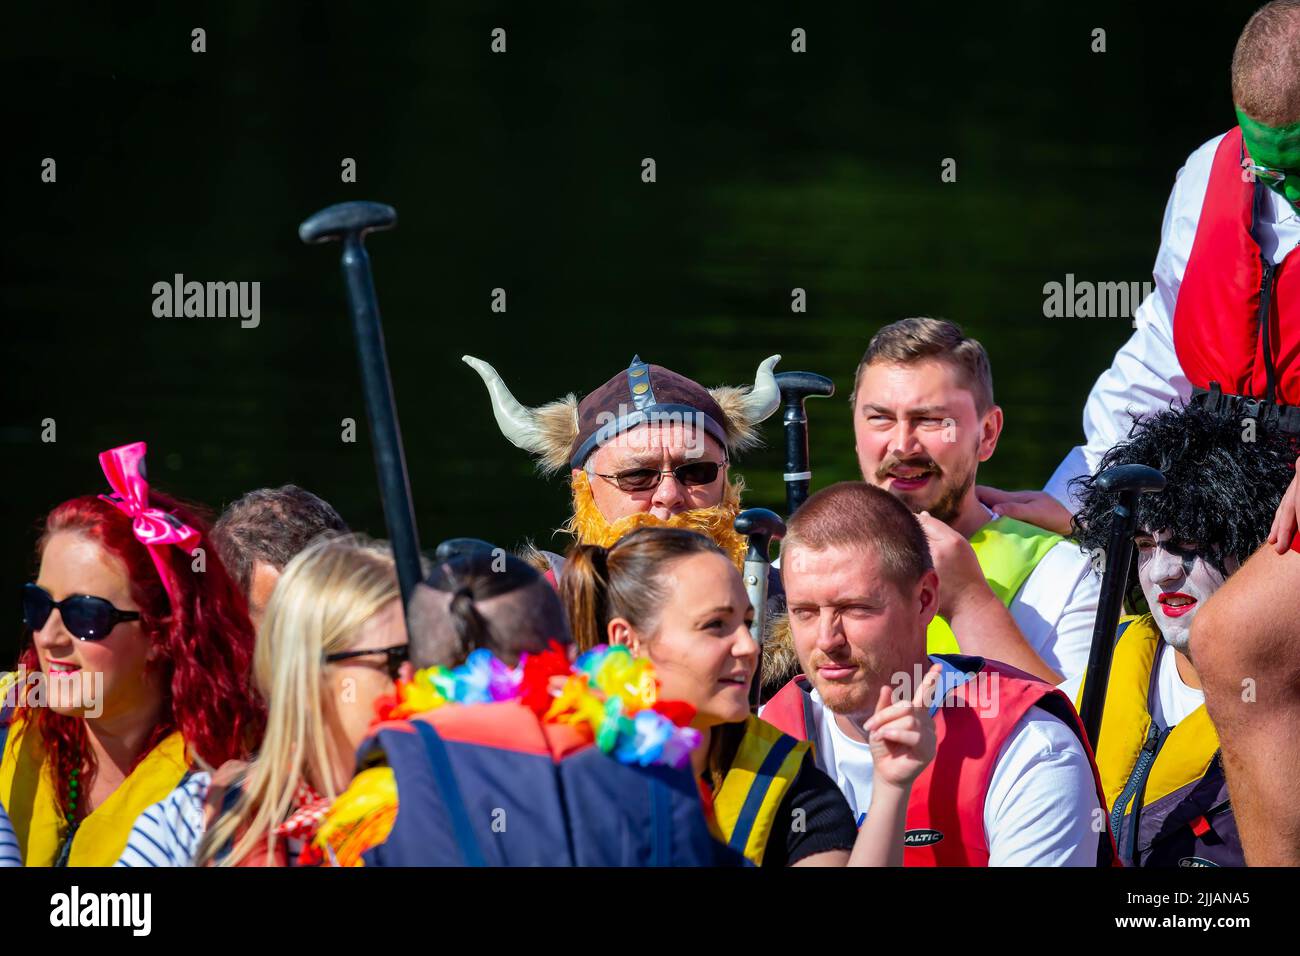 Homme dans une tenue Viking portant un chapeau à cornes assis parmi des collègues dans une course de bateau de dragon Banque D'Images